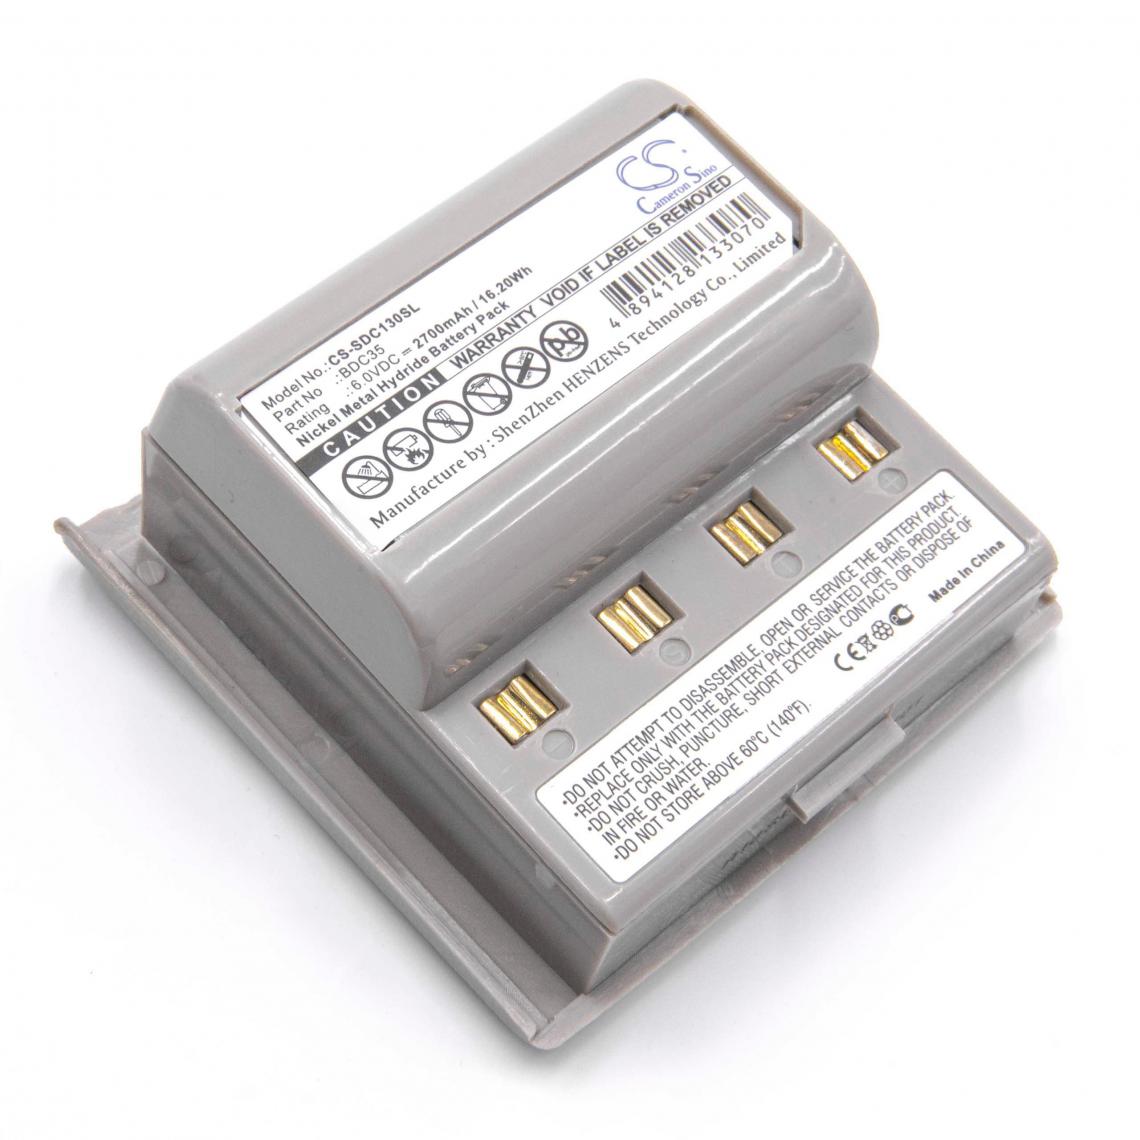 Vhbw - vhbw NiMH batterie 2700mAh (6V) pour appareil de mesure Sokkia SET2100, SET230RM - Piles rechargeables